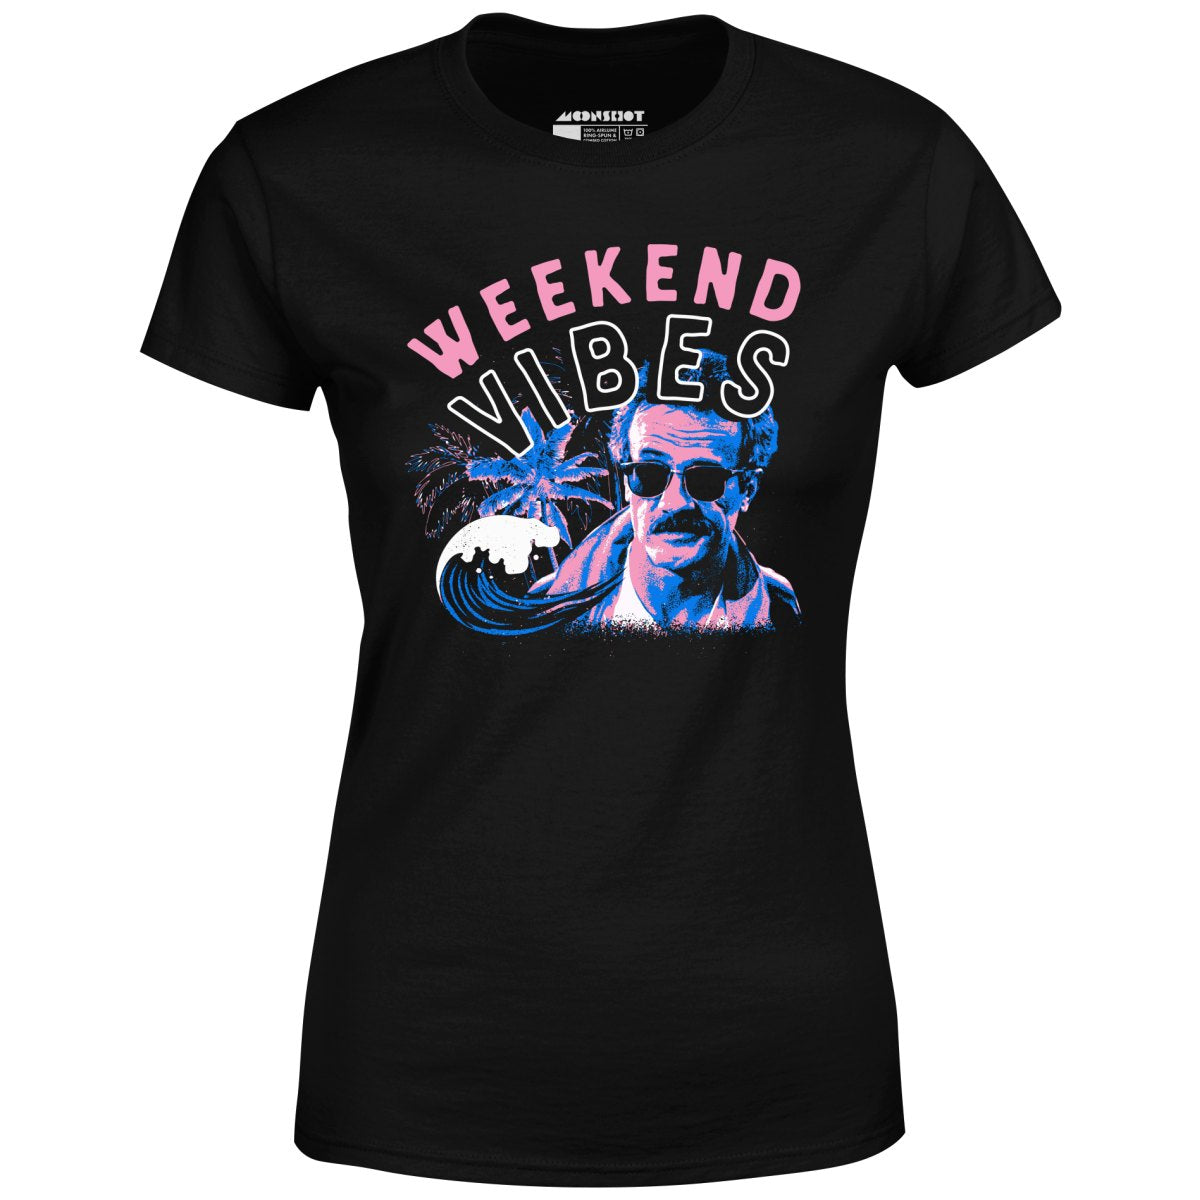 Weekend Vibes - Women's T-Shirt